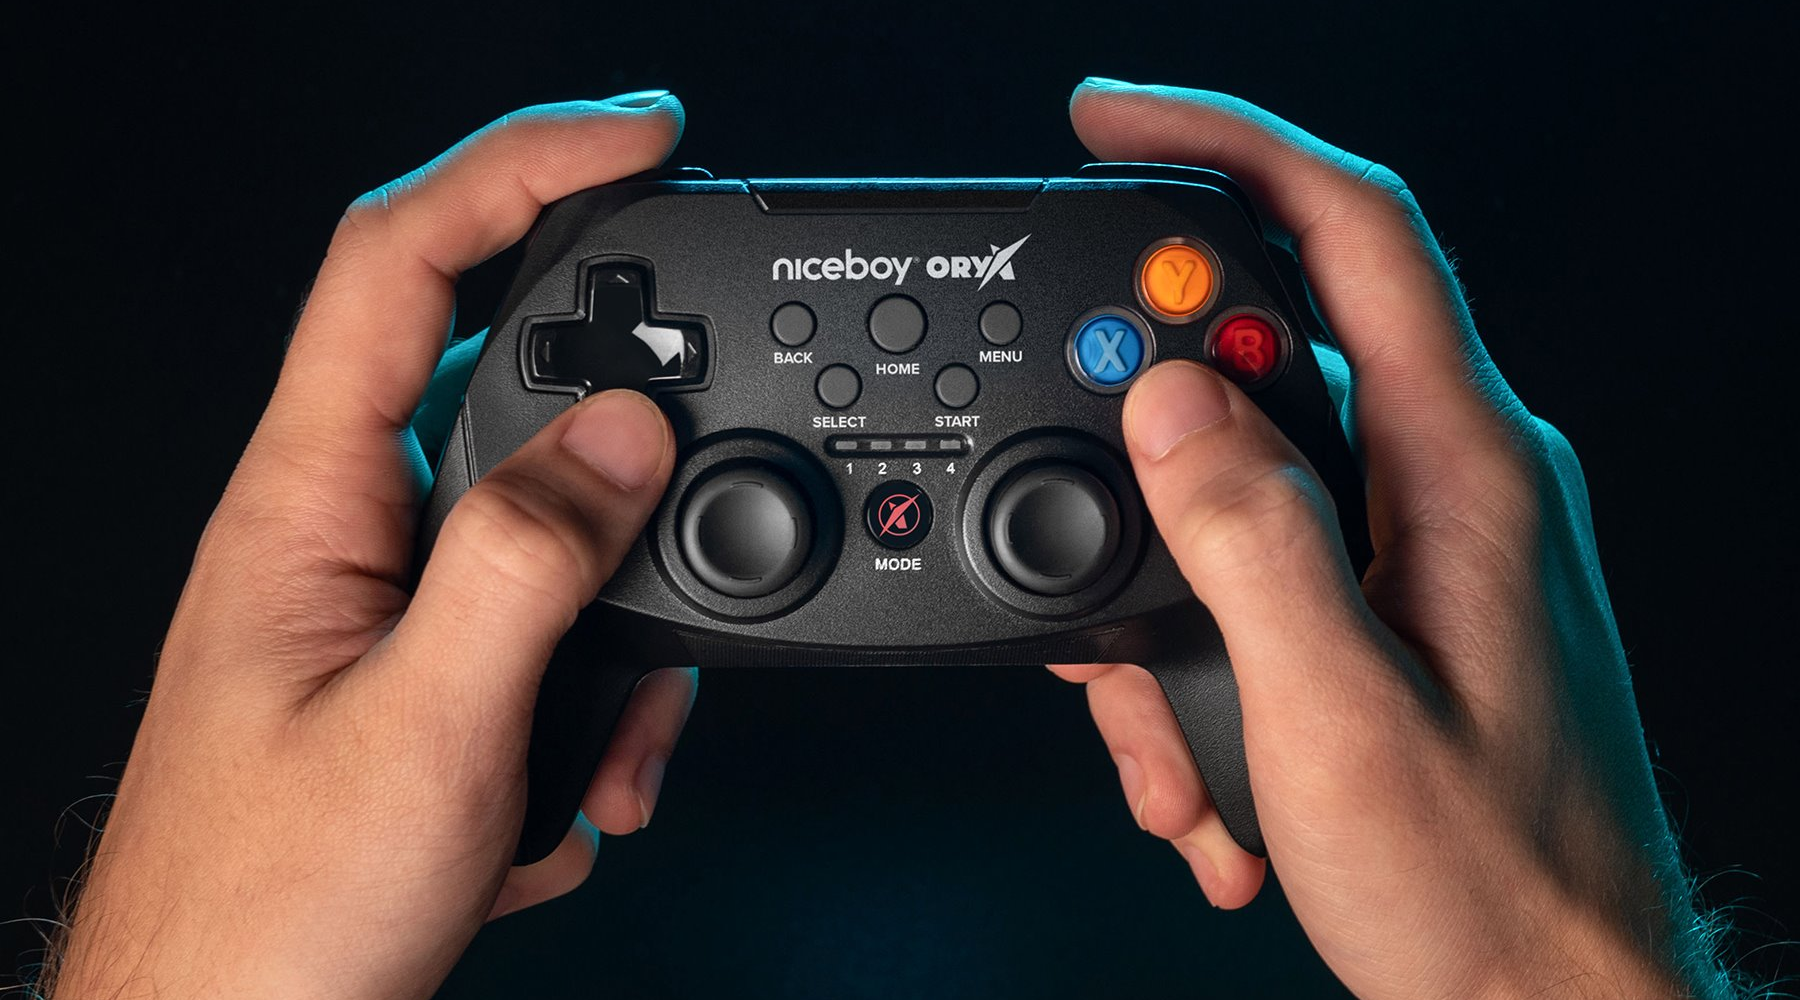 Univerzální herní ovladač Niceboy ORYX GamePad je speciálně určený pro PC, chytré telefony i herní konzole 7. generace, jako je Playstation 3 či Xbox 360.